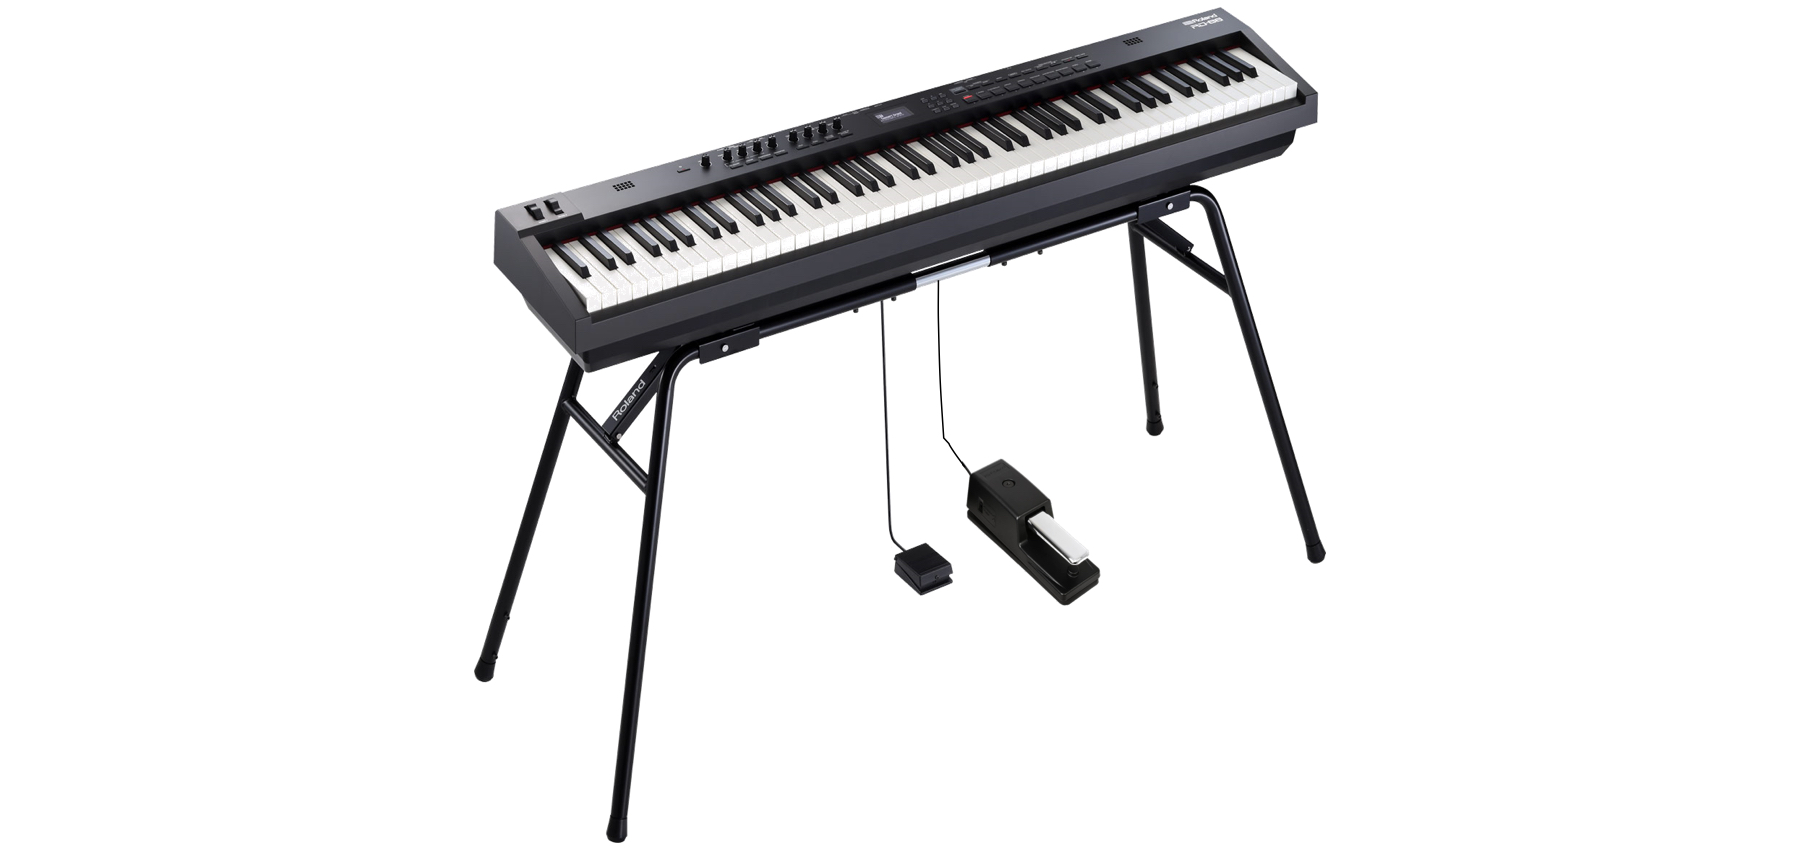 ＊スタンドは別売りになります。 |*ブランド|*商品型名|*販売価格]](税込)| |Roland|RD-88-SC|[!￥143,000!]| [!!スピーカー搭載の軽量でコンパクトなステージピアノ！!!] スピーカーを搭載し、軽量でコンパクトなステージピアノ「RD-88-SC」を発売します。 * […]